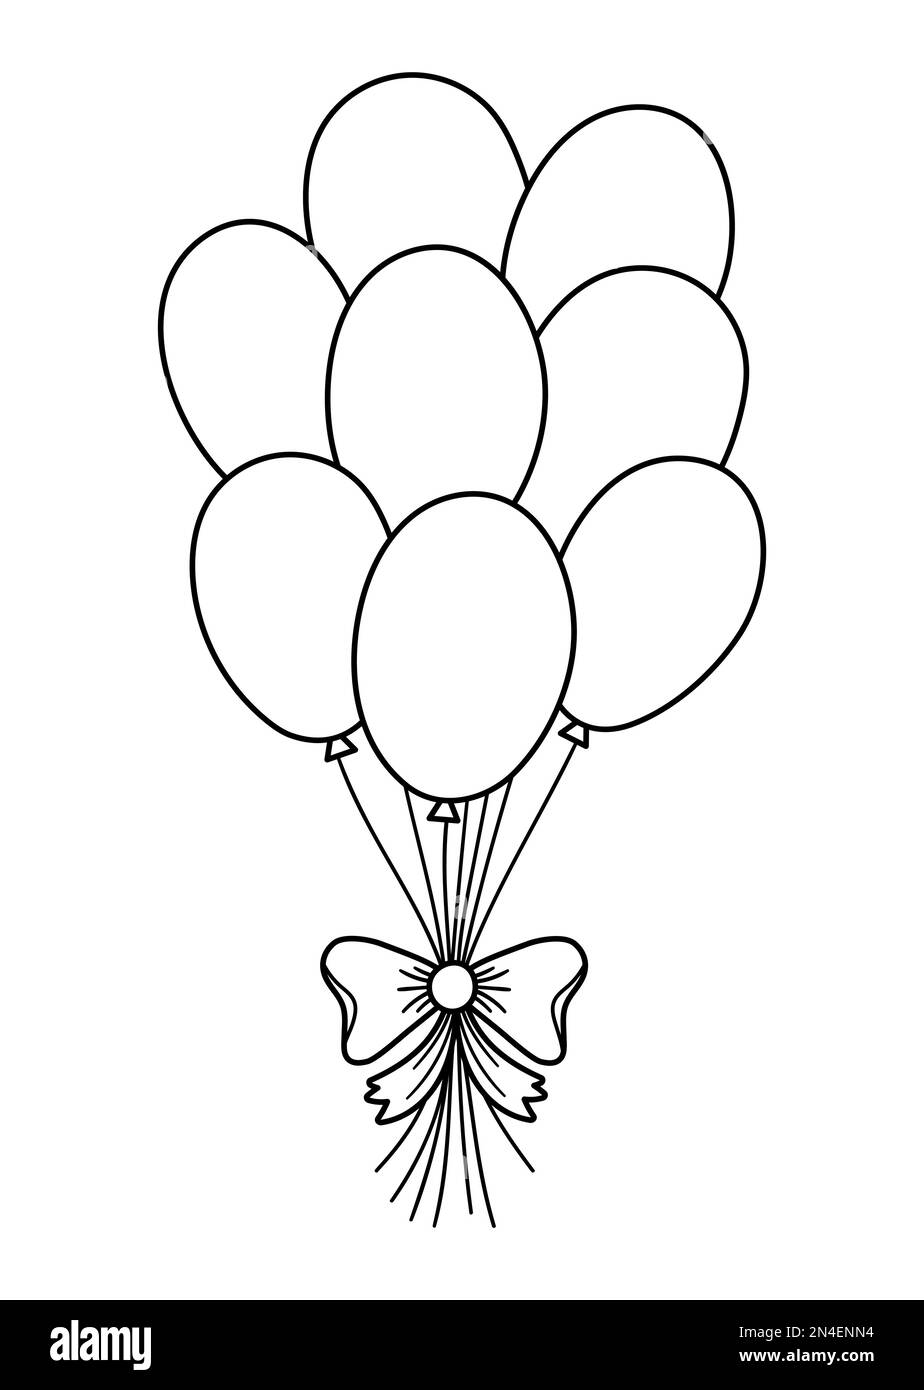 Vektorsüße schwarz-weiße Ballons mit Schleife. Lustiges Geburtstagsgeschenk für Karte, Poster, Print-Design. Kurzdarstellung der Feiertage für Kinder. Stock Vektor